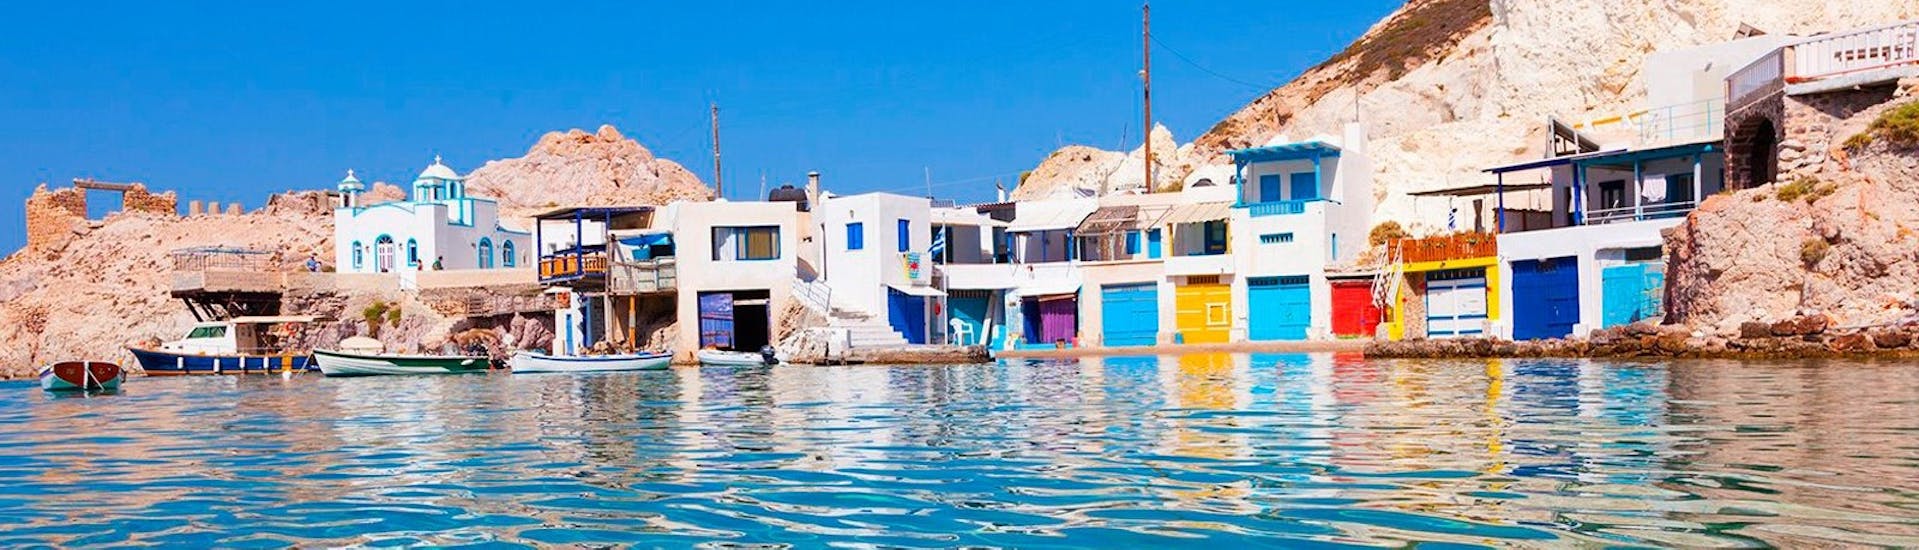 Het kleurrijke dorpje Klima, waar de status van Venus de Milo werd ontdekt, in de privé luxe jachtreis naar Folegandros, Sikinos, Polyaigos & Kimolos met Indigo Yacht Milos.